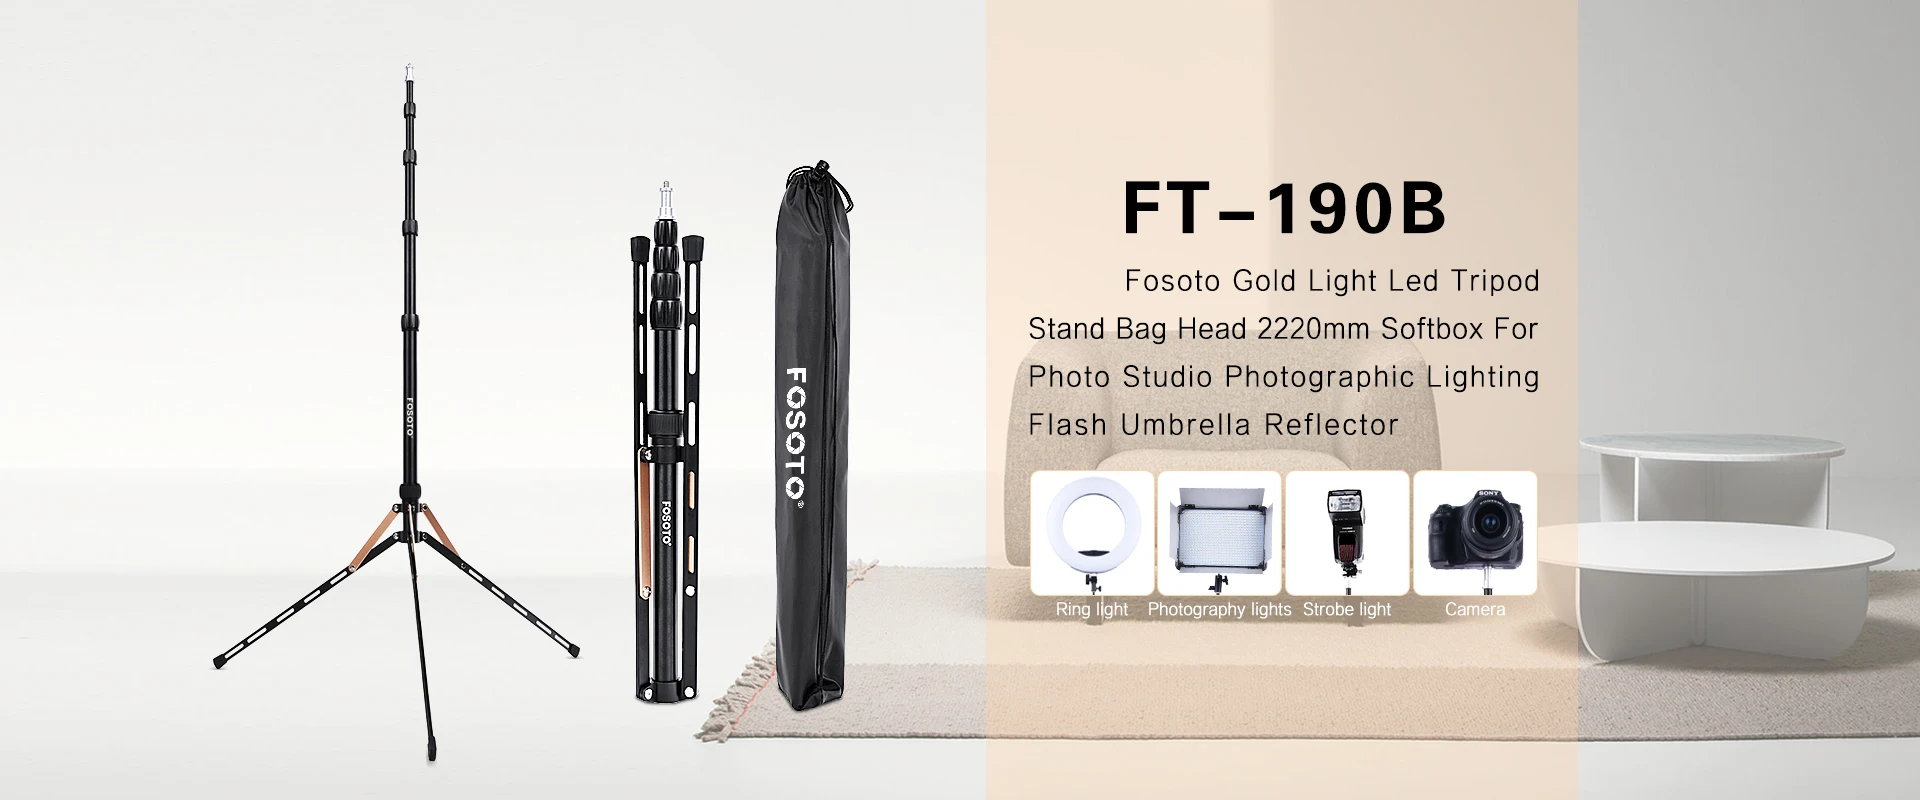 FOSOTO FT-140 портативный светильник 1,23 м штатив для камеры телефона фотографический светильник ing Flash Зонты отражатель Фотостудия